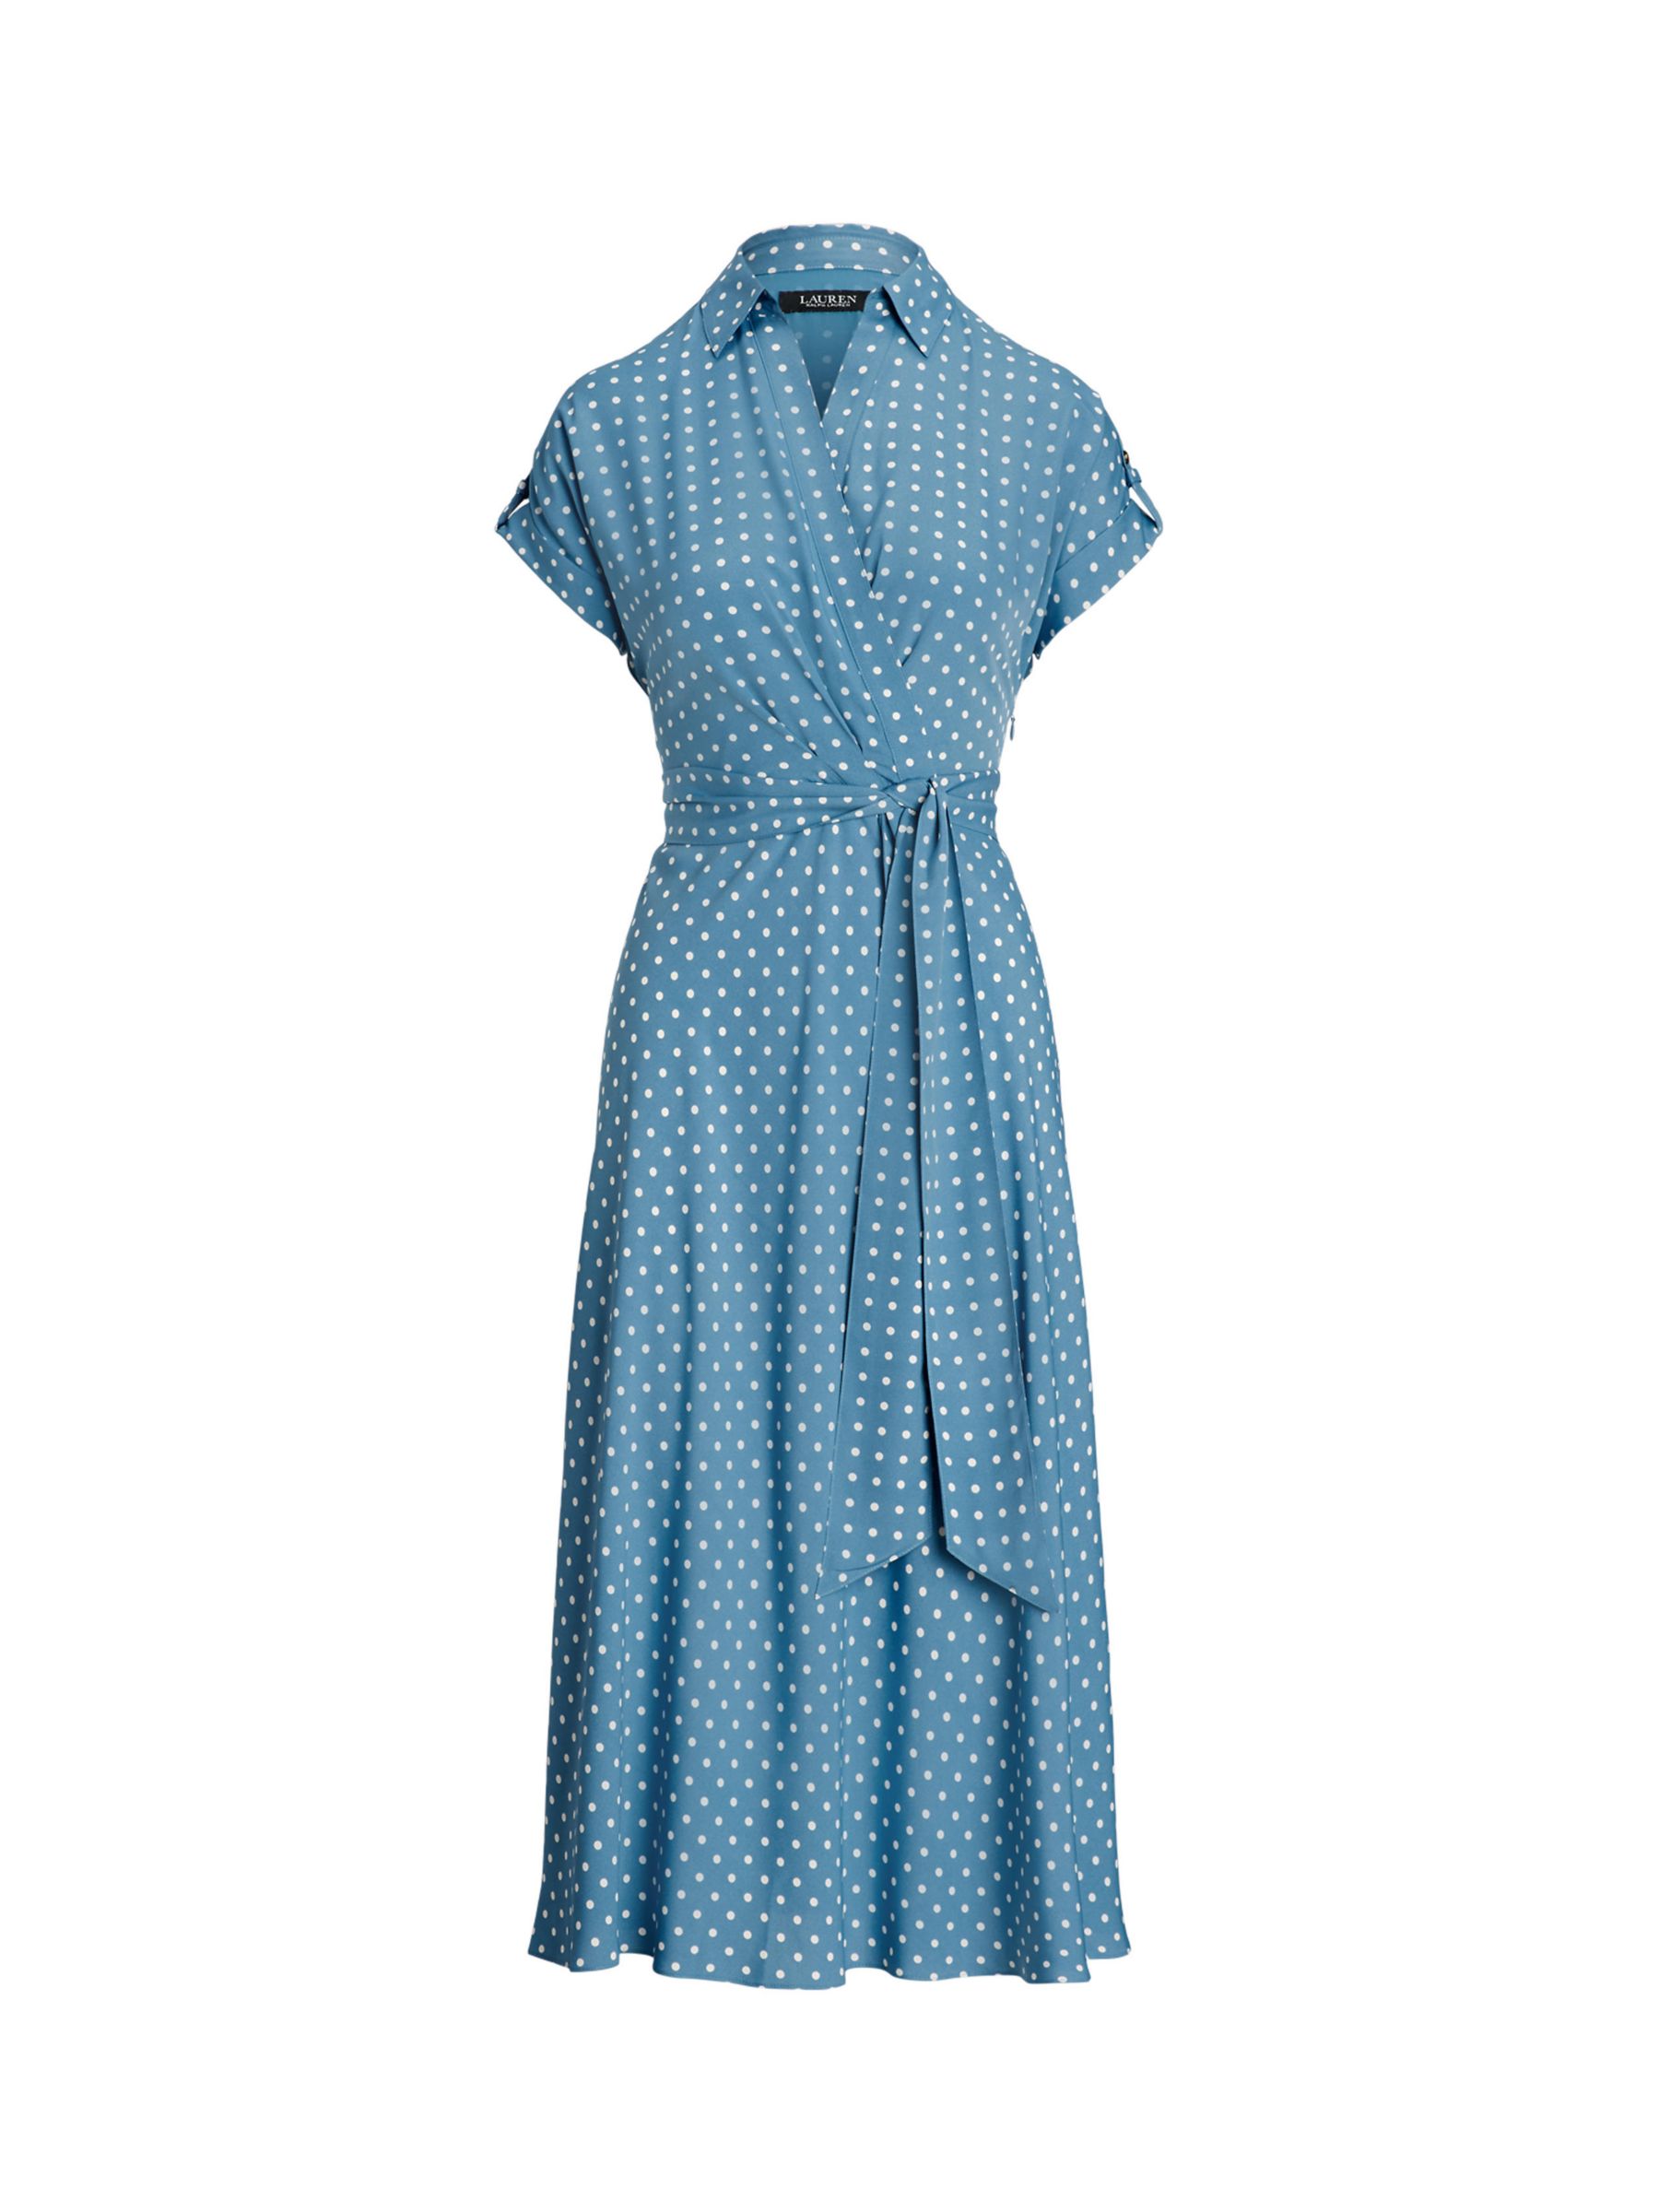 Lauren Ralph Lauren Fratillo Polka Dot Wrap Dress, Blue/Multi, 8